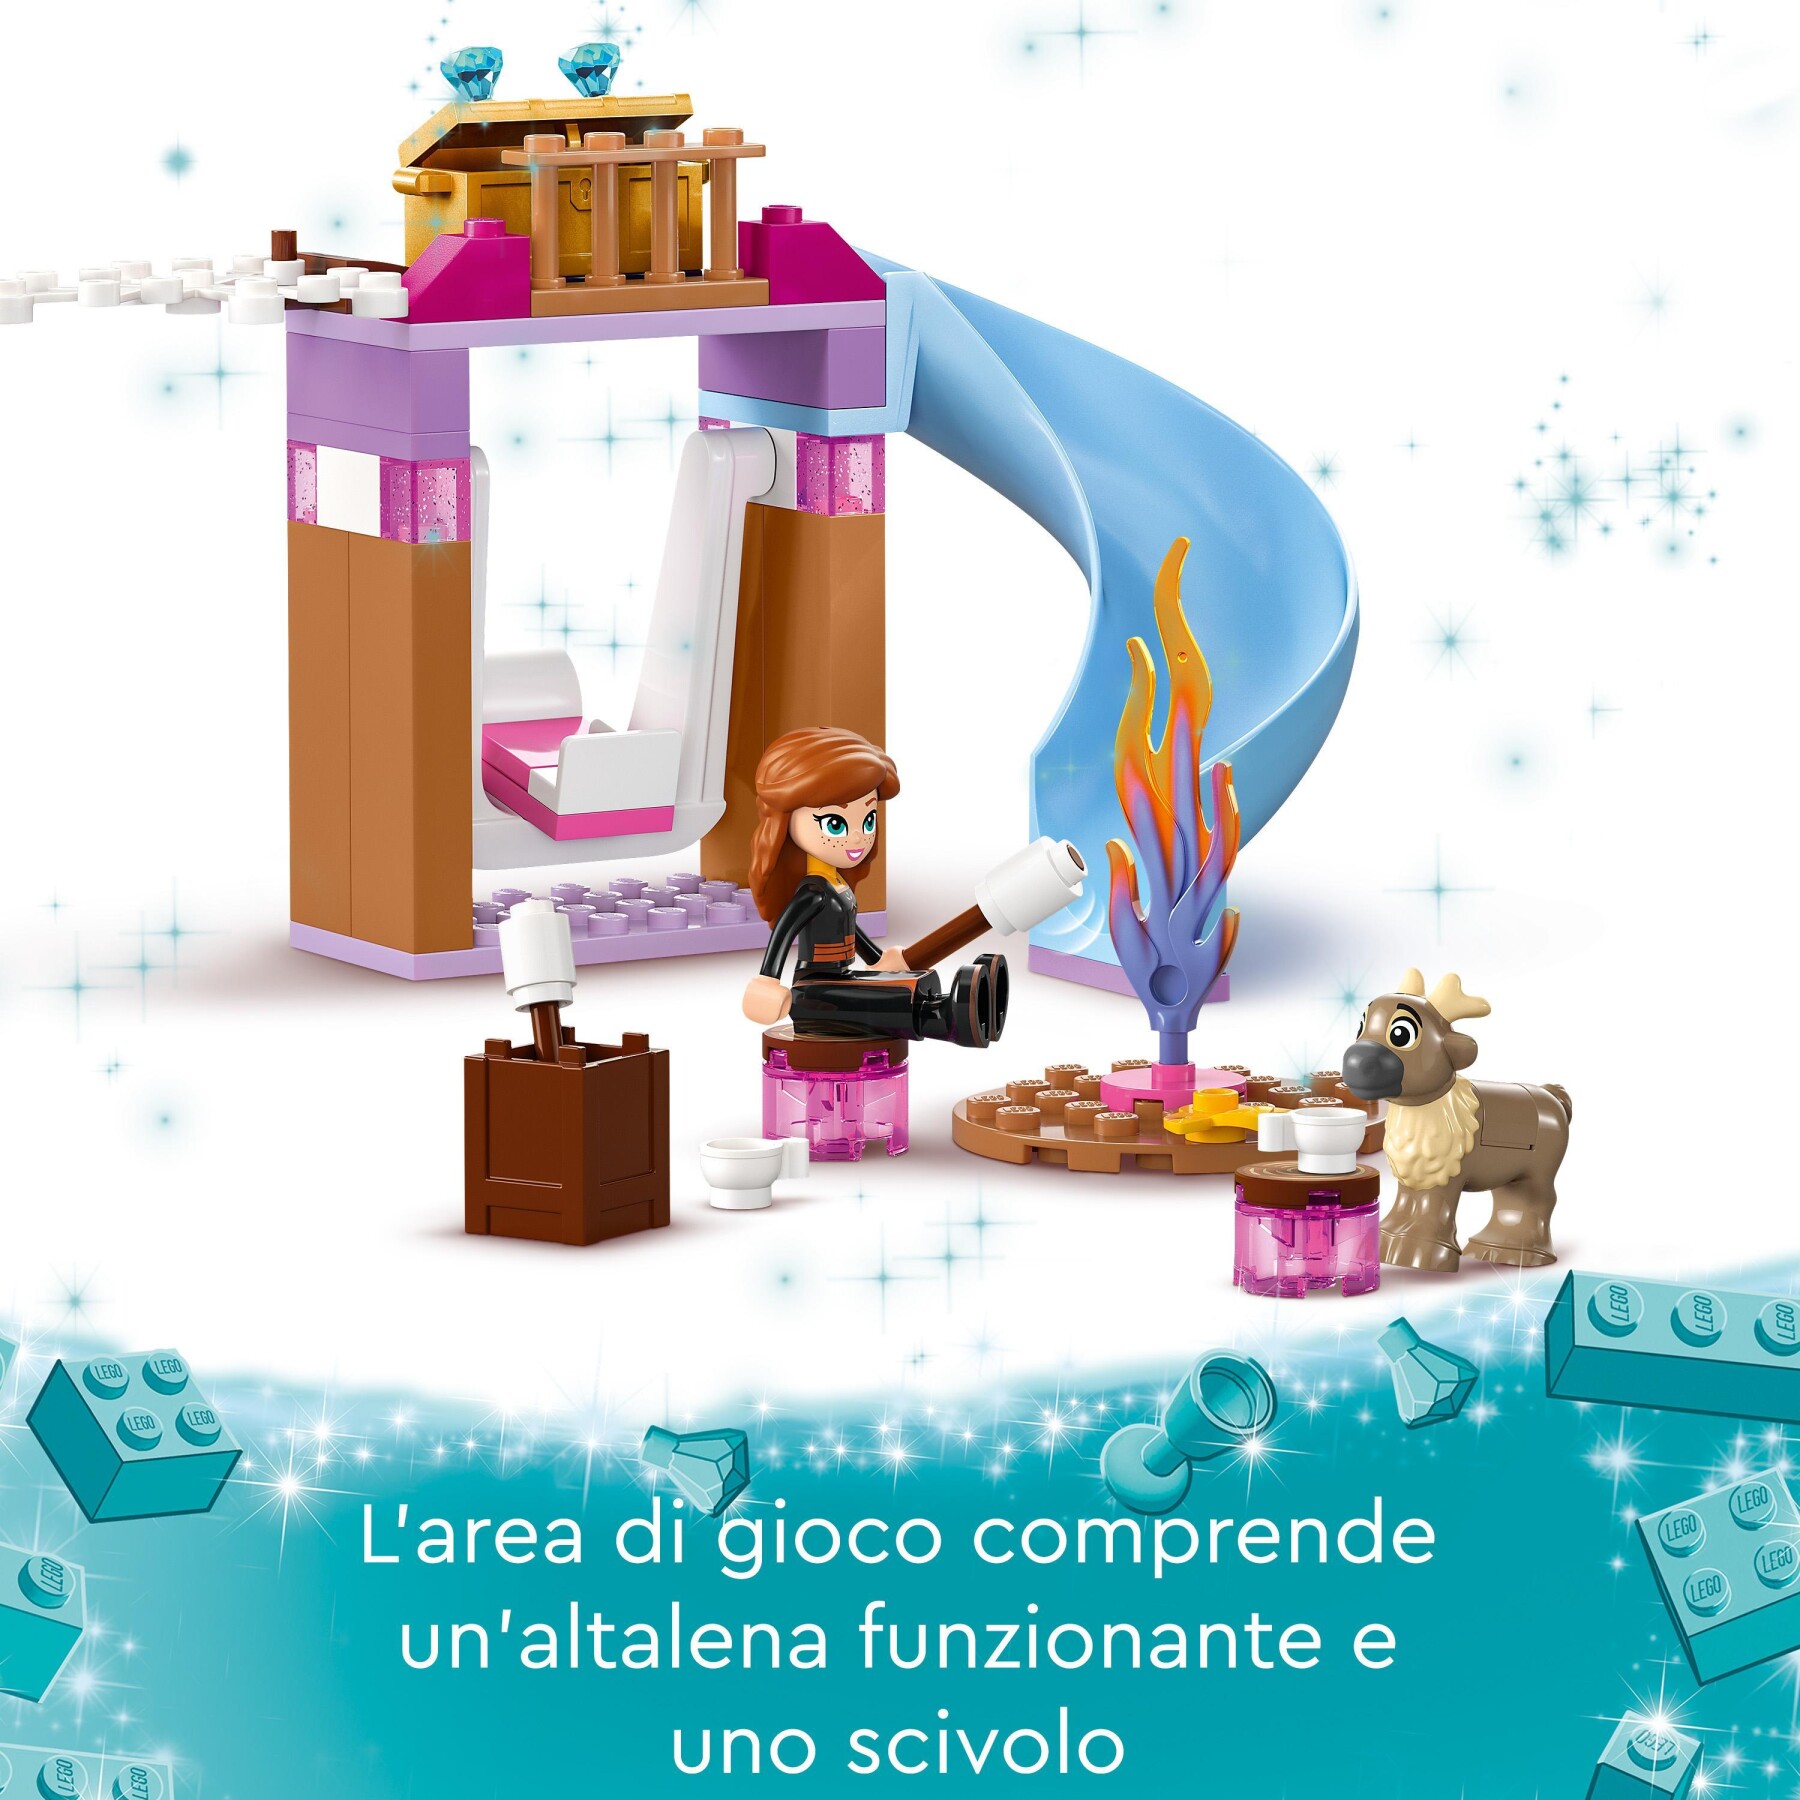 Lego disney princess 43238 castello di ghiaccio di elsa di frozen, palazzo giocattolo delle principesse, giochi per bambini 4+ - DISNEY PRINCESS, LEGO DISNEY PRINCESS, Frozen